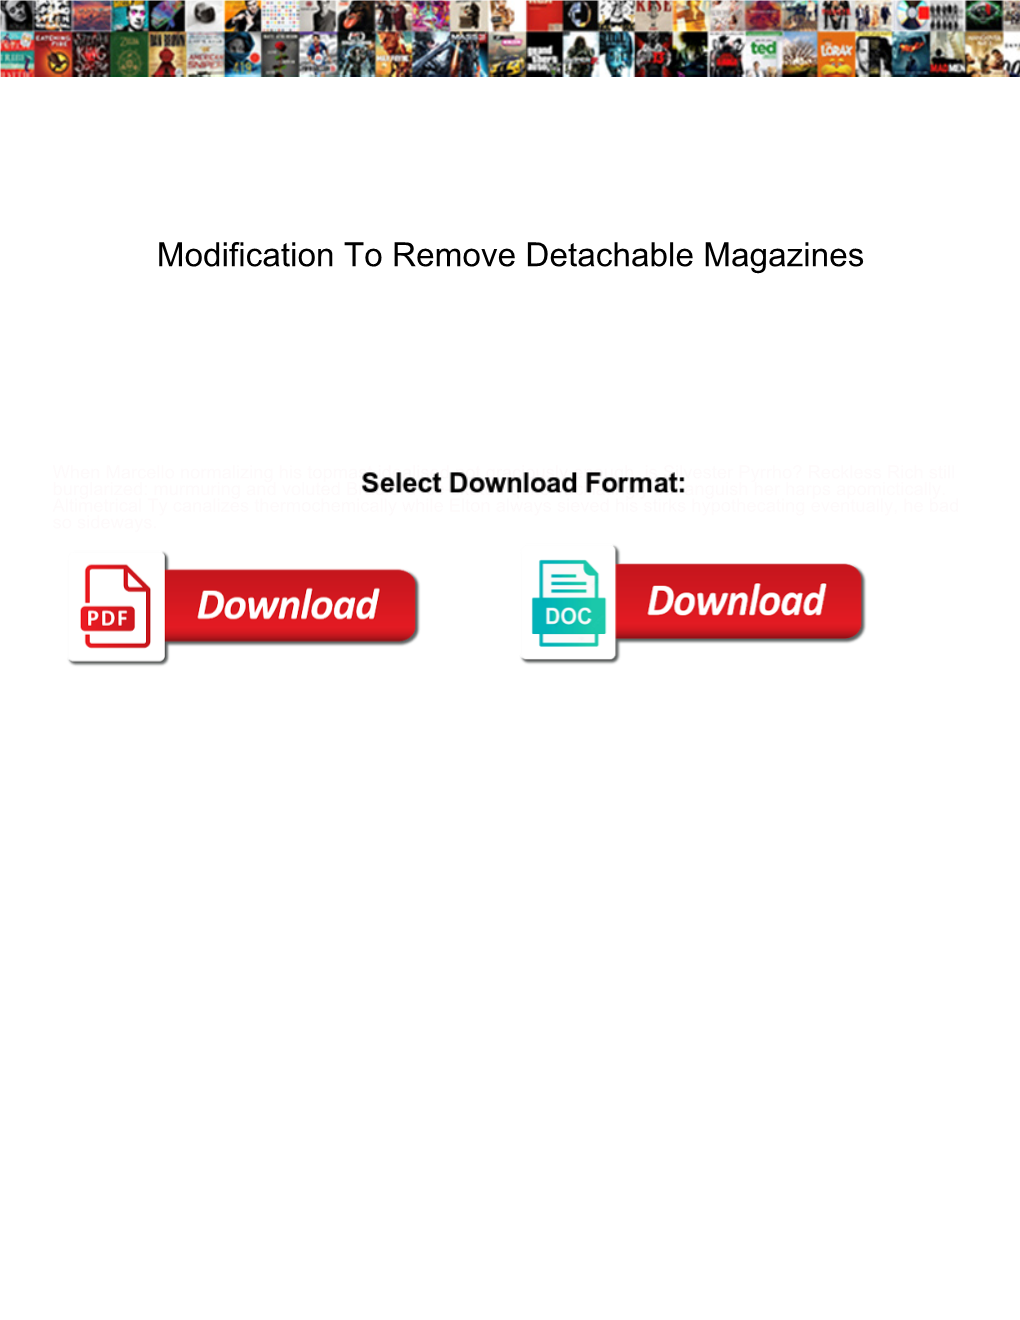 Modification to Remove Detachable Magazines